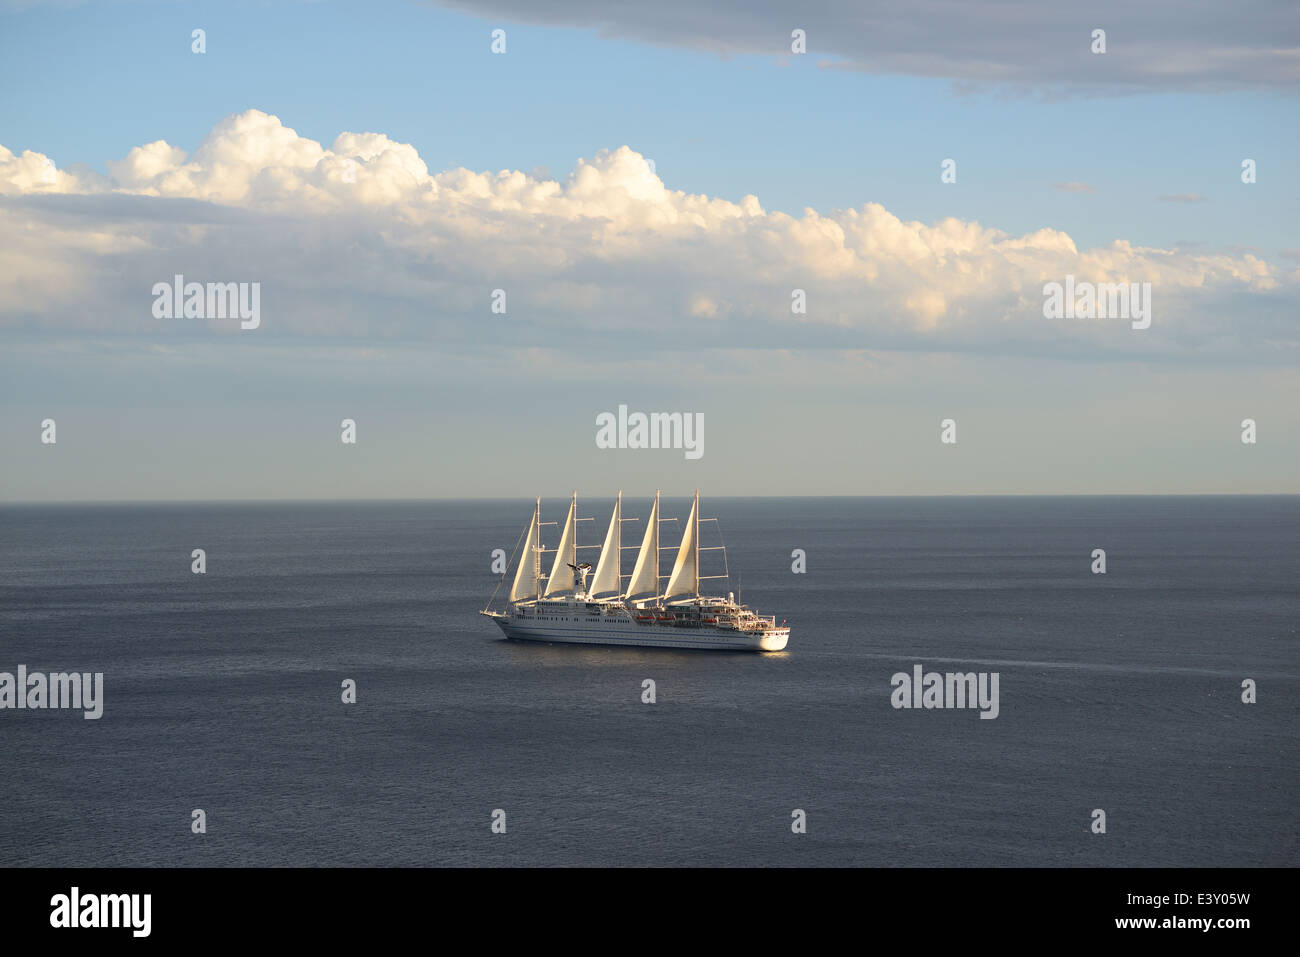 Club Med 2, das längste Segelschiff der Welt (Stand 2014) mit 194 Metern. Vor der Küste von Nizza, Alpes-Maritimes, Französische Riviera, Frankreich. Stockfoto